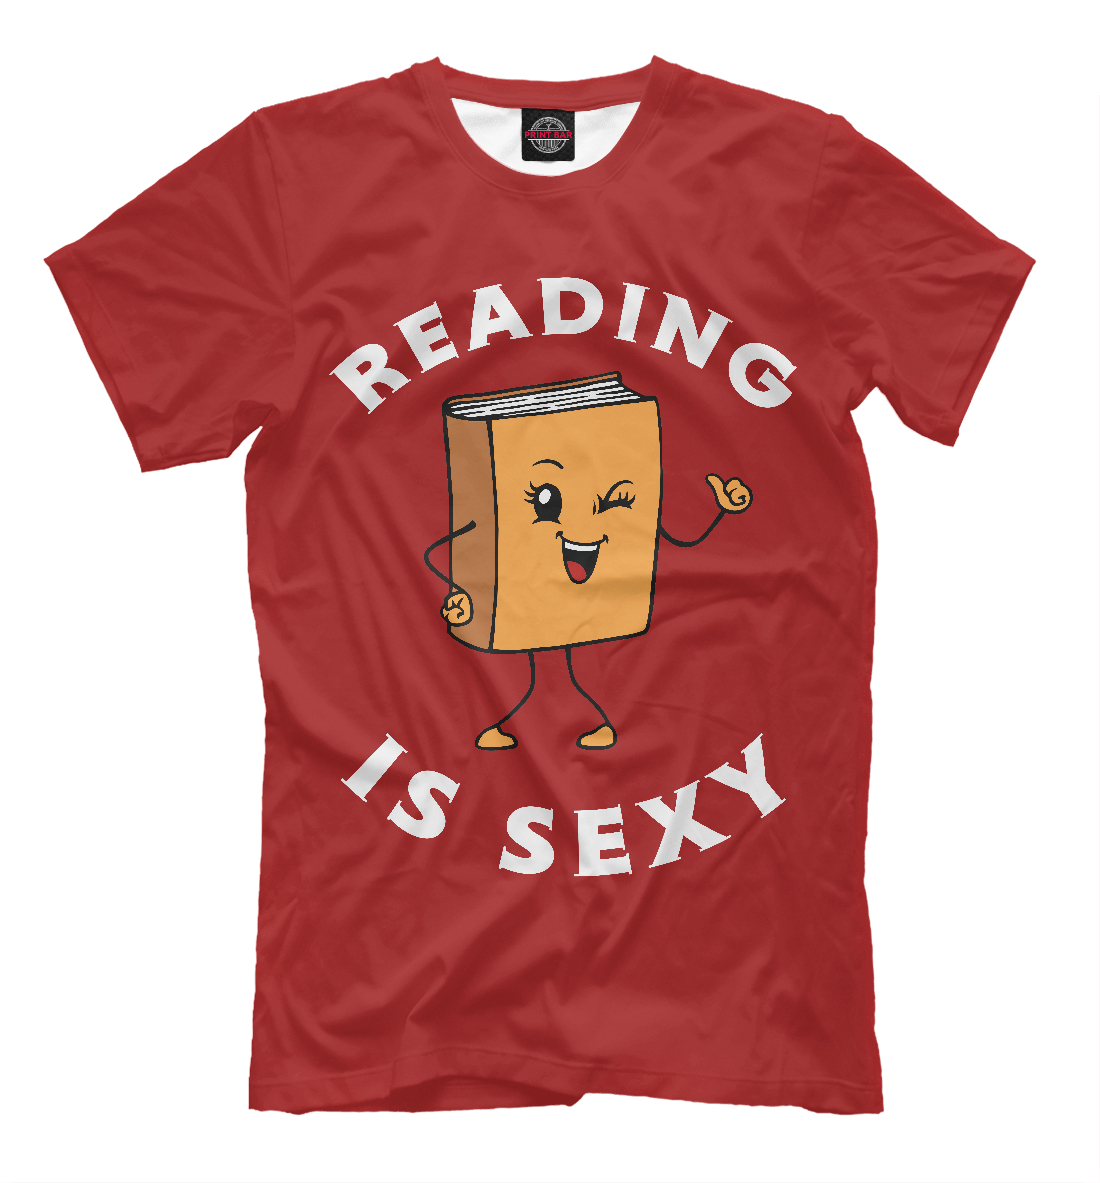 Читать - это сексуально